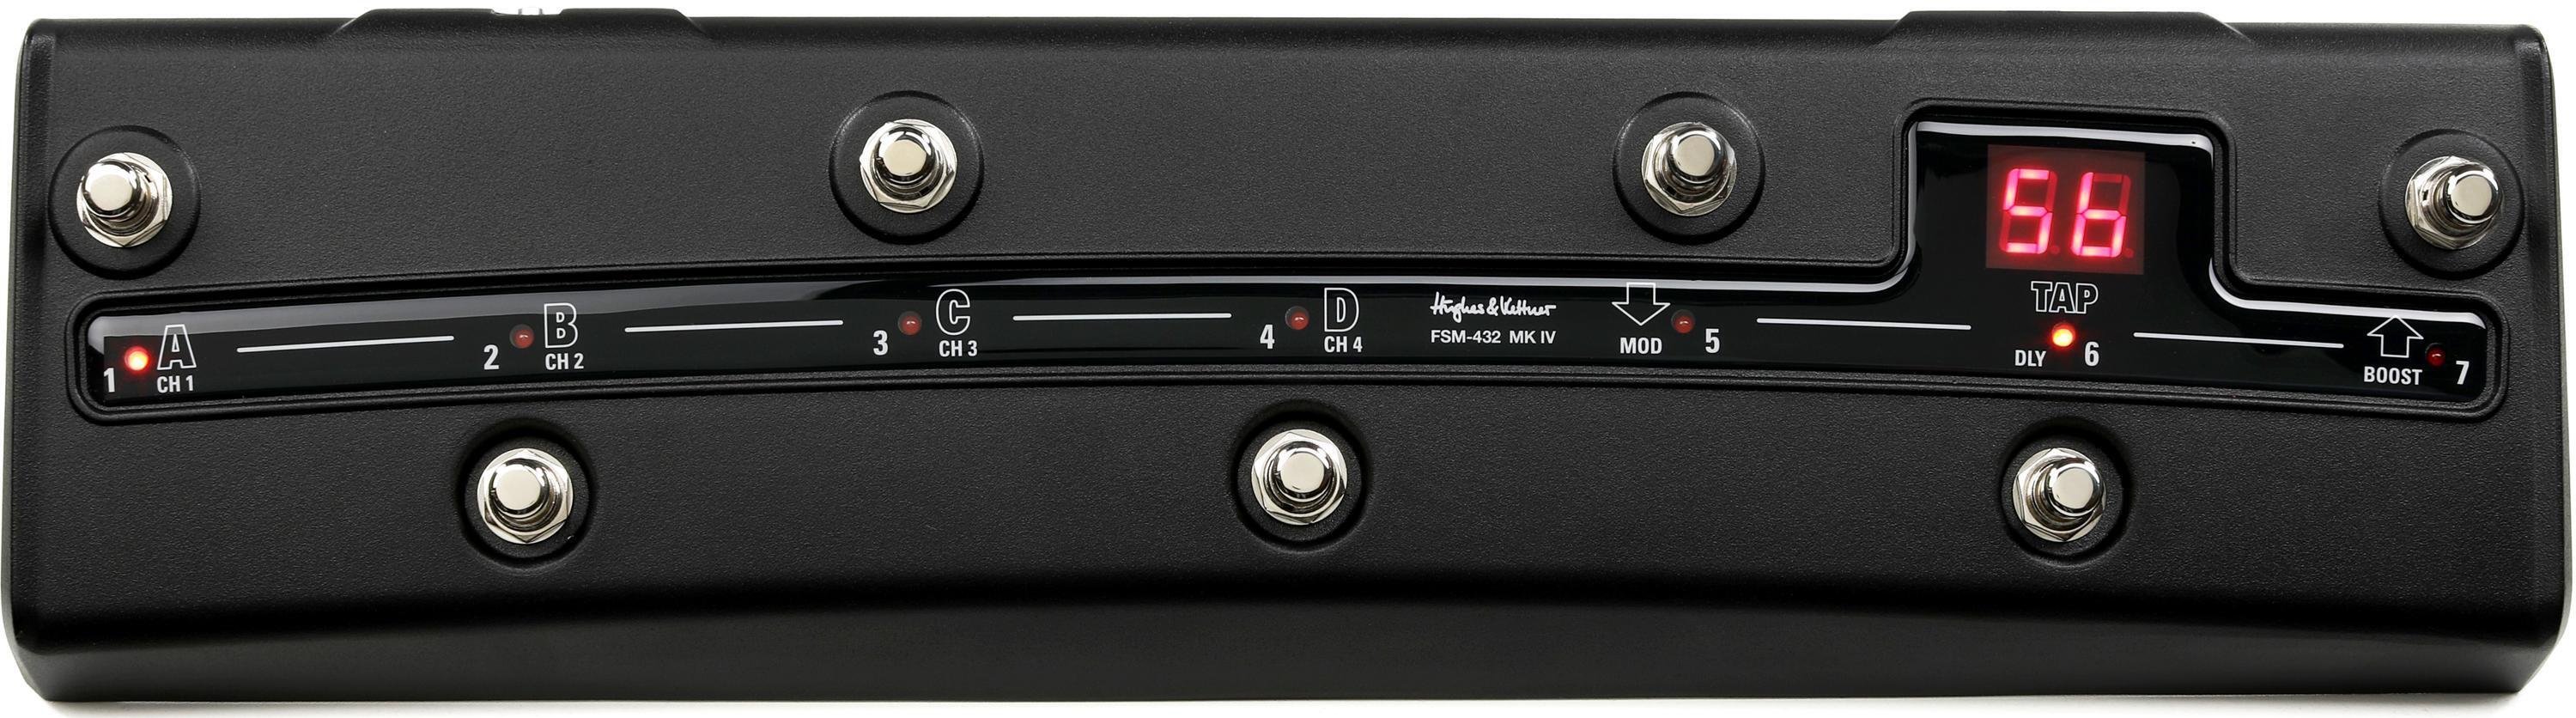 Hughes & Kettner FSM-432 MK IV MIDI Board Foot Controller